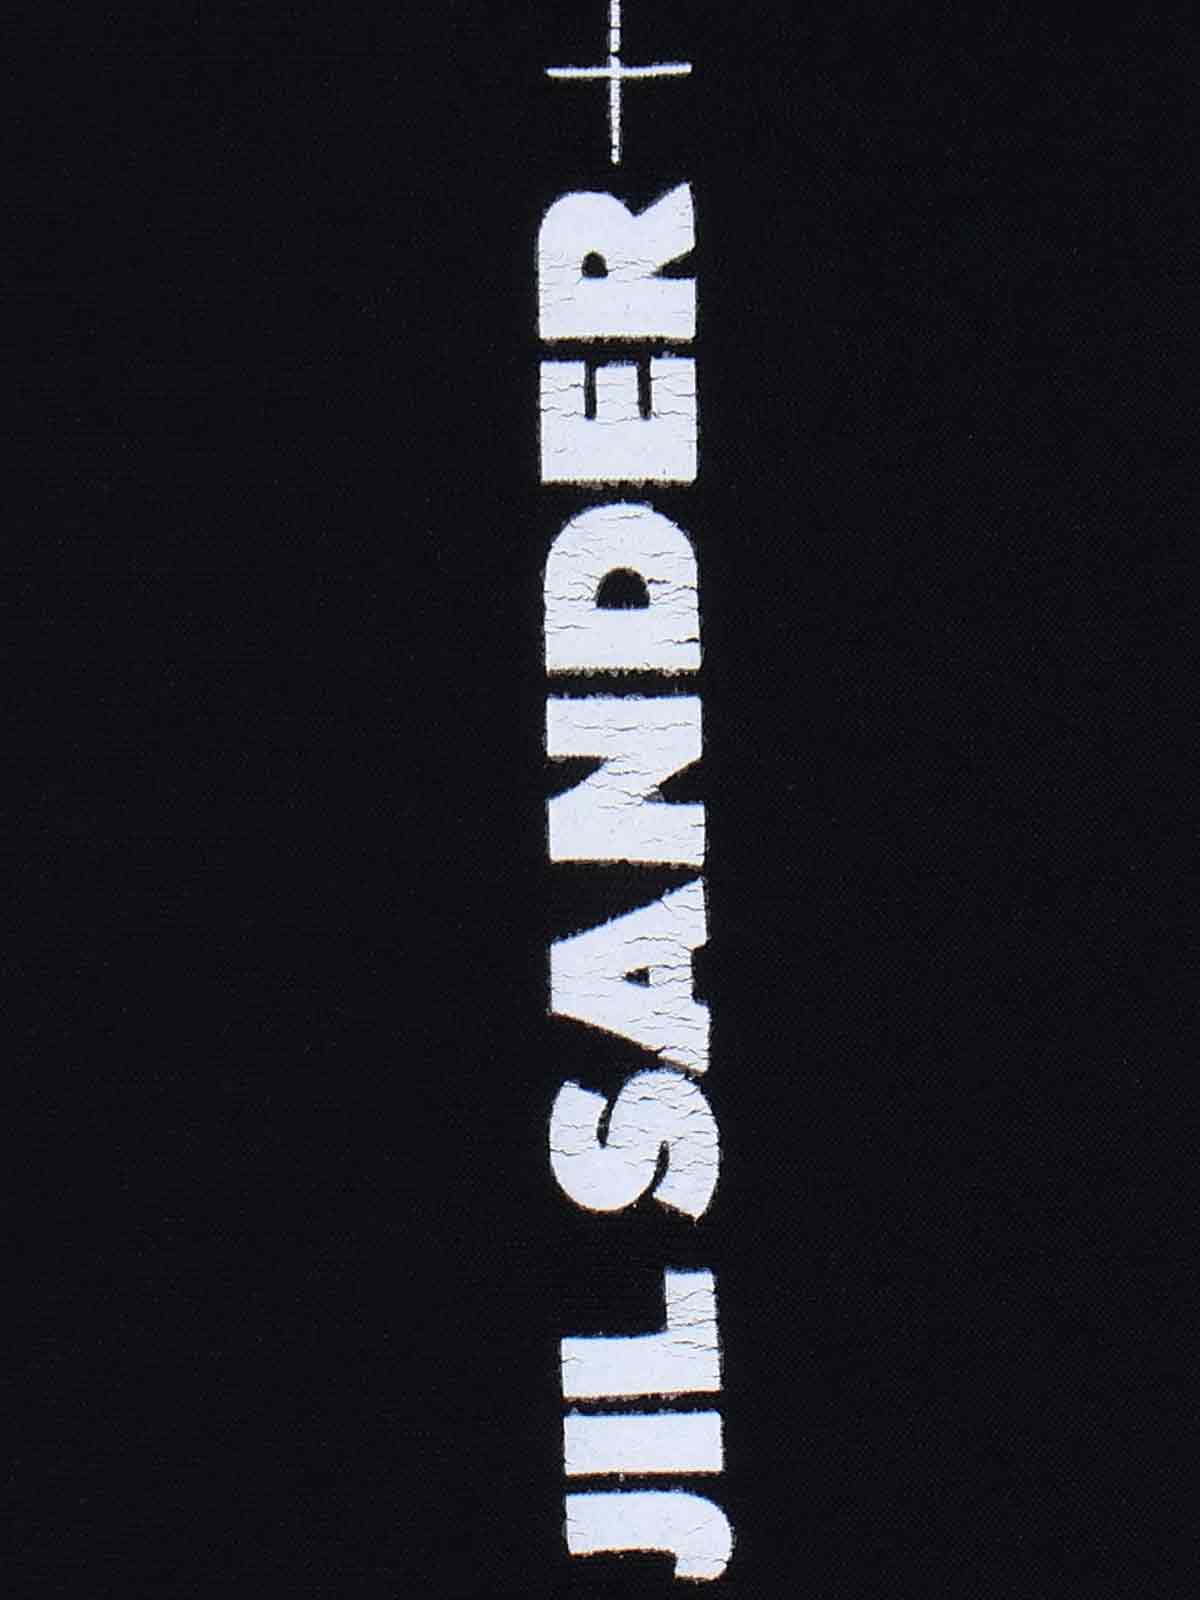 Shop Jil Sander Logo Sports Top